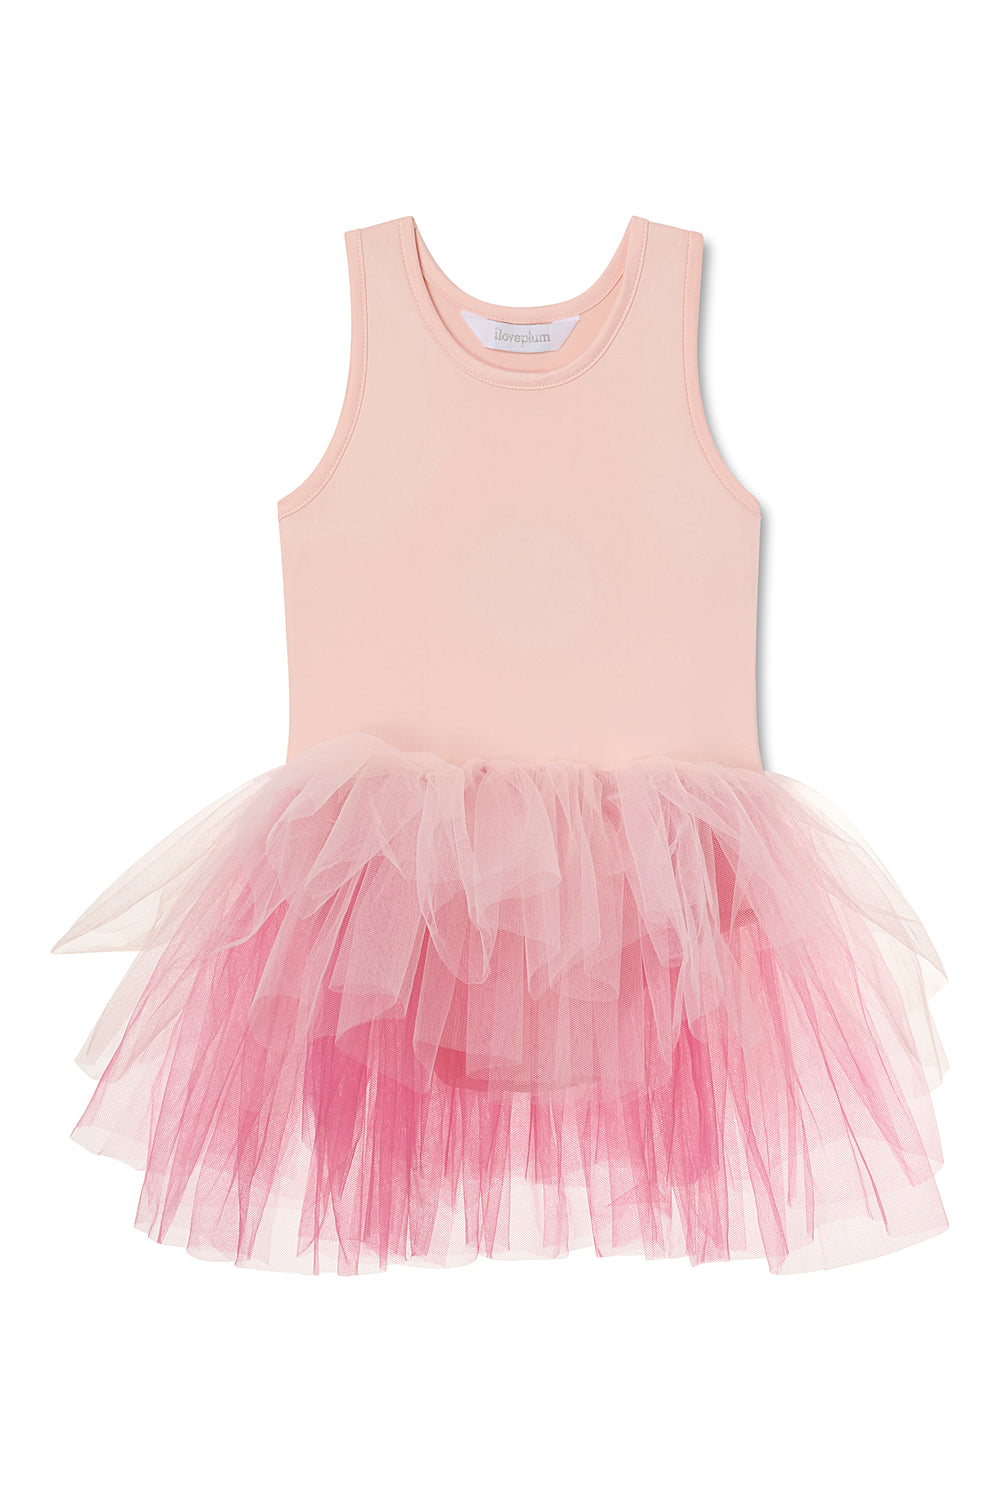 B.A.E Ombre Tutu Dress - Jewel Pink - Twinkle Twinkle Little One